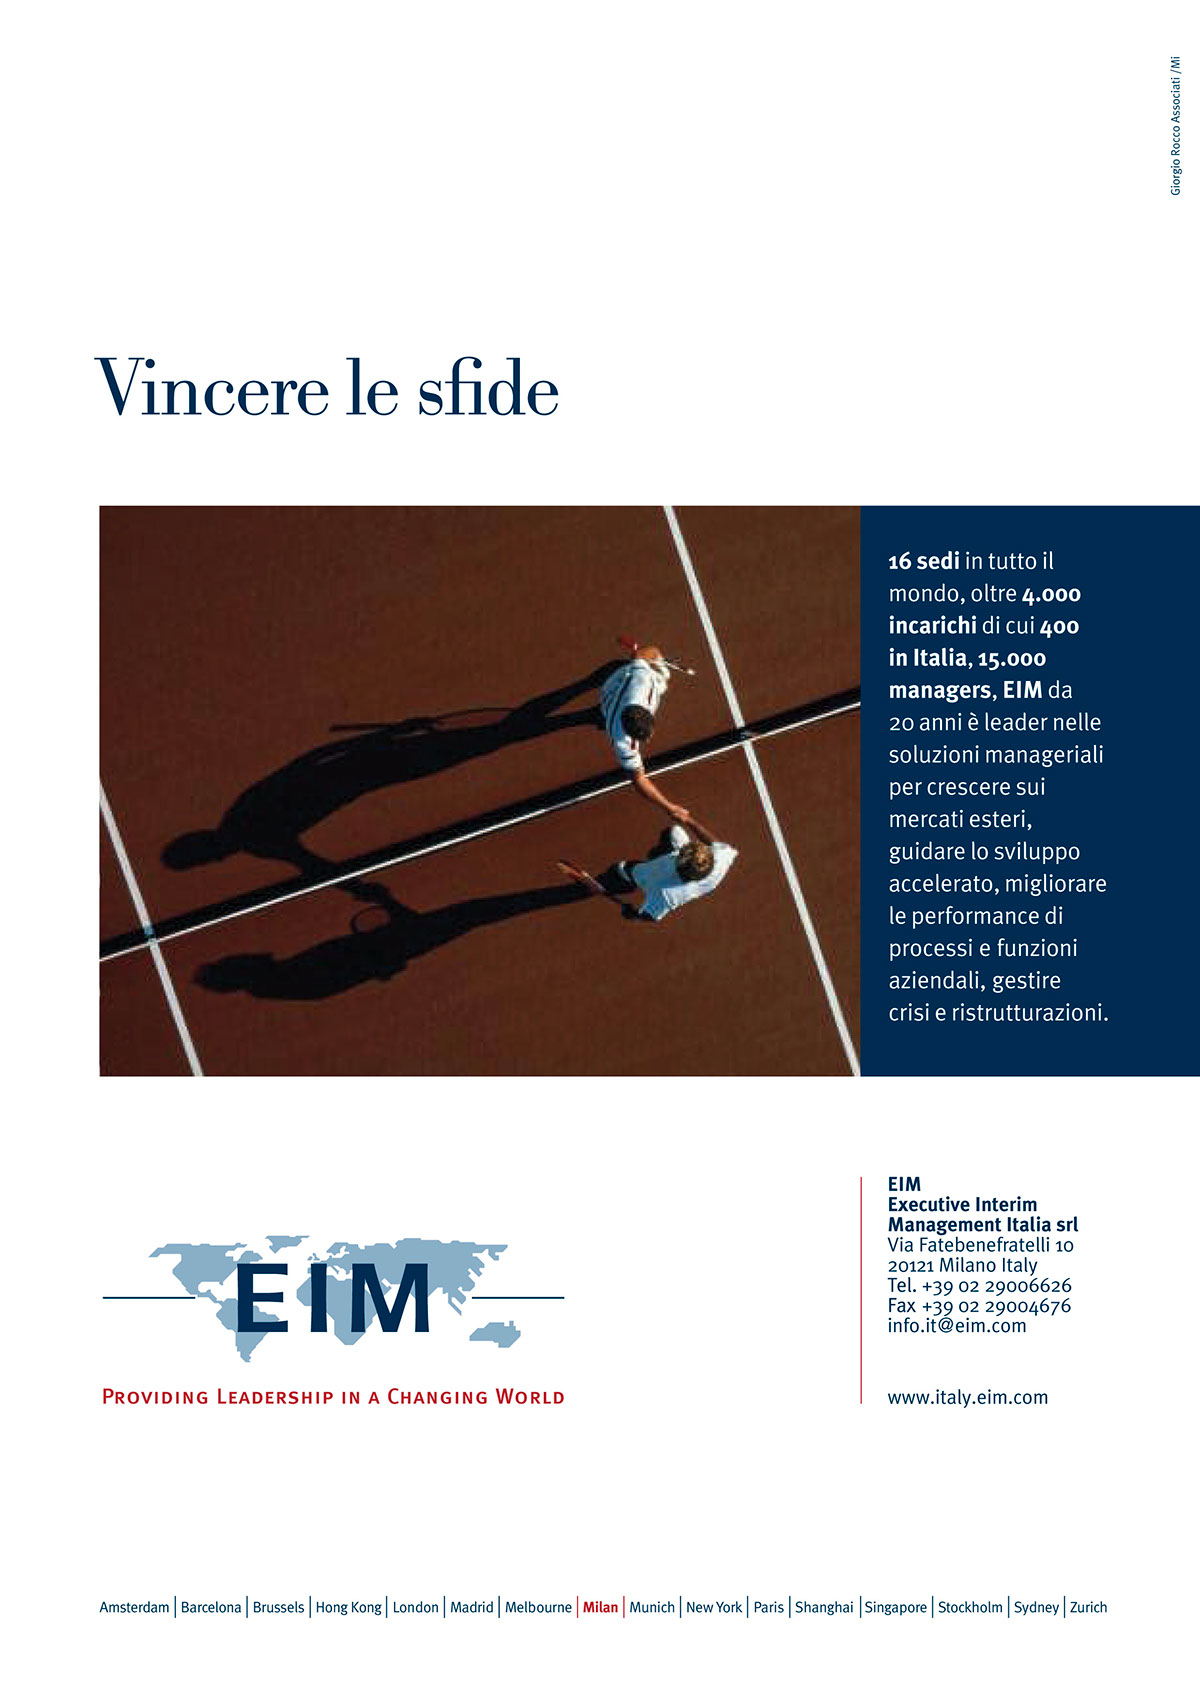 eim  EIM Italia Executive Interim Management ads giorgio rocco giorgio rocco associati giorgio rocco lab